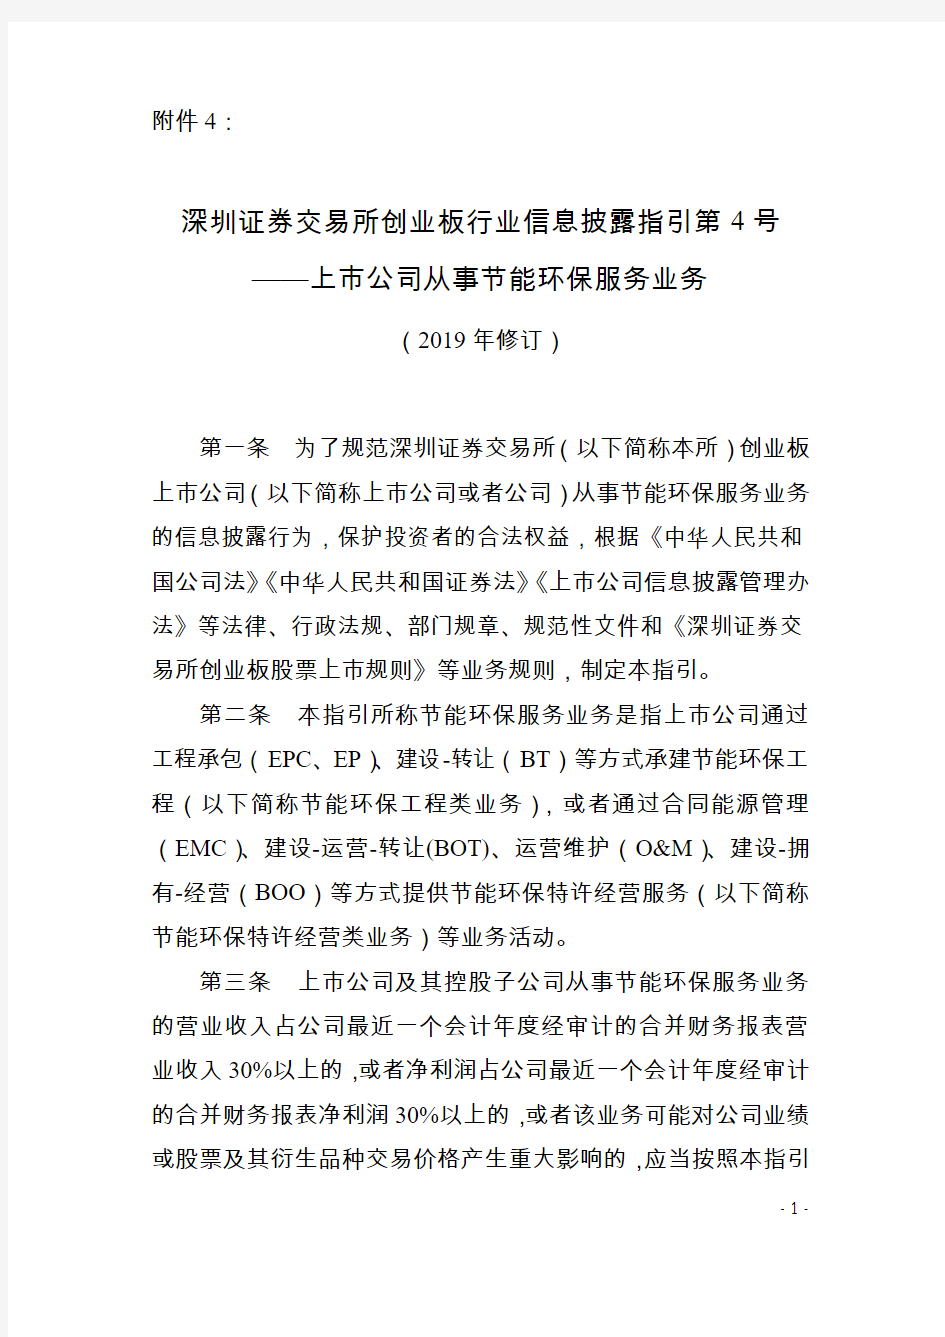 《深圳证券交易所创业板行业信息披露指引第4号——上市公司从事节能环保服务业务(2019年修订)》